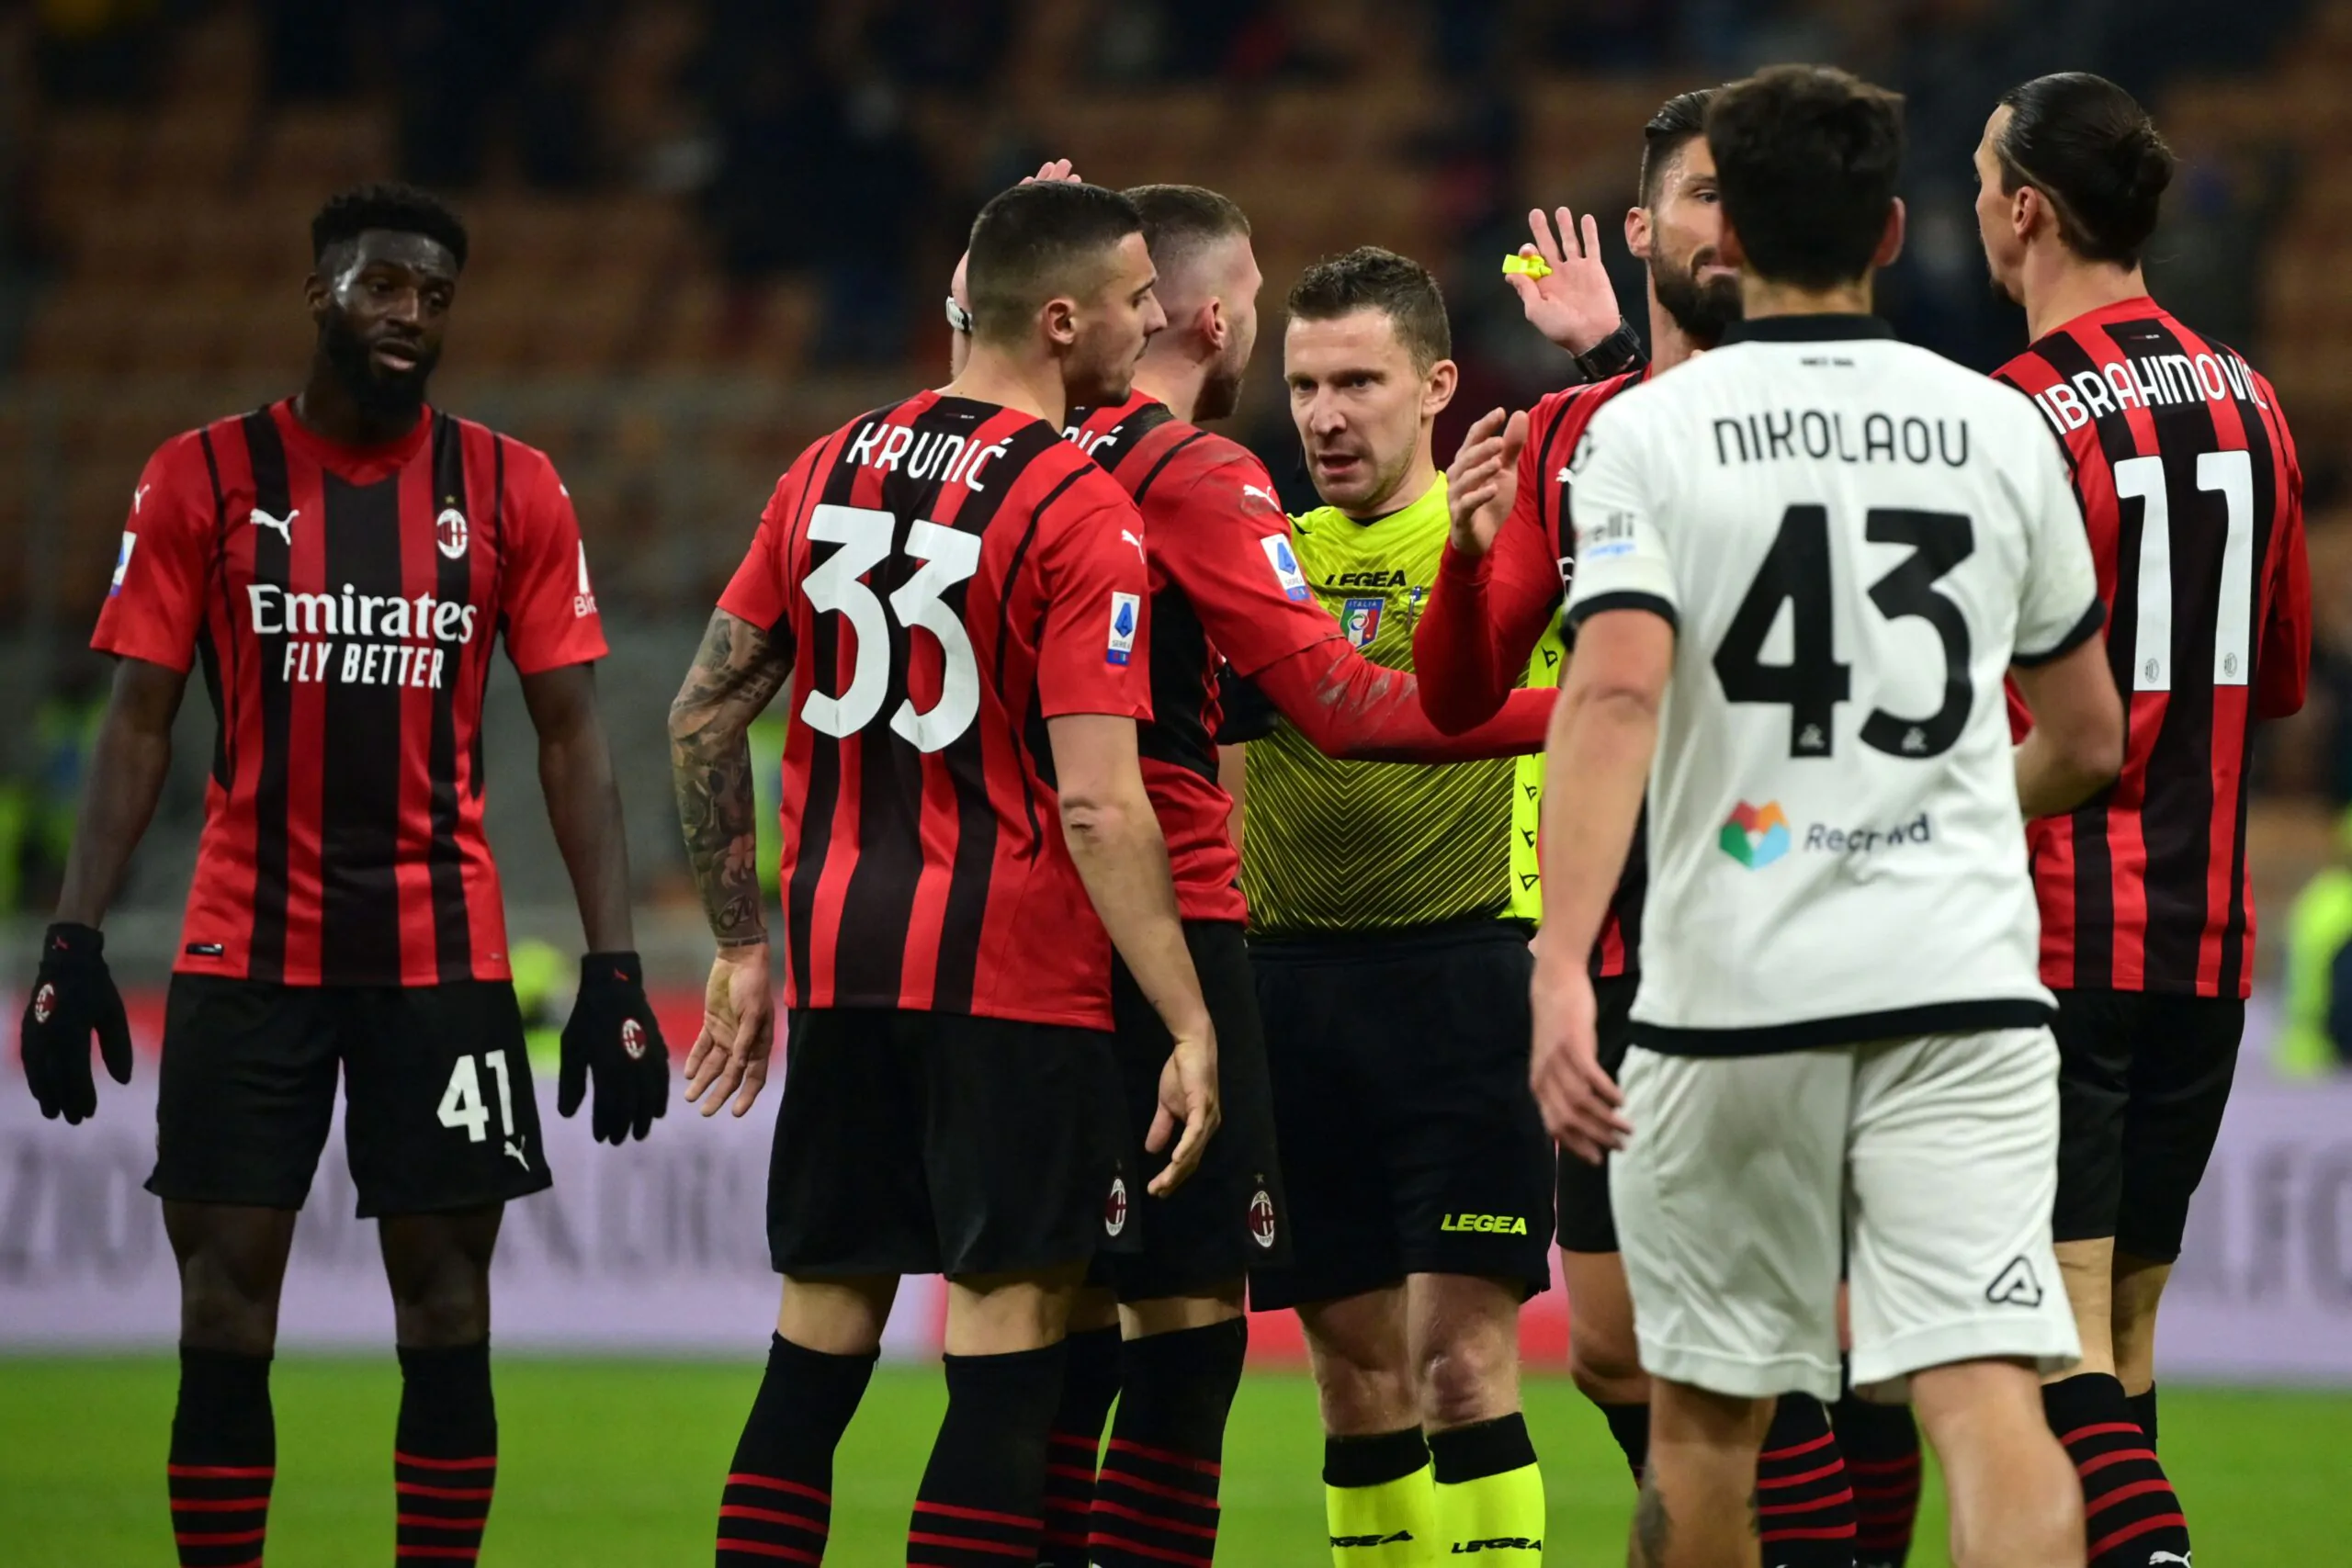 Ultime partite in rossonero, il Milan ha già deciso: sarà mandato via a fine stagione